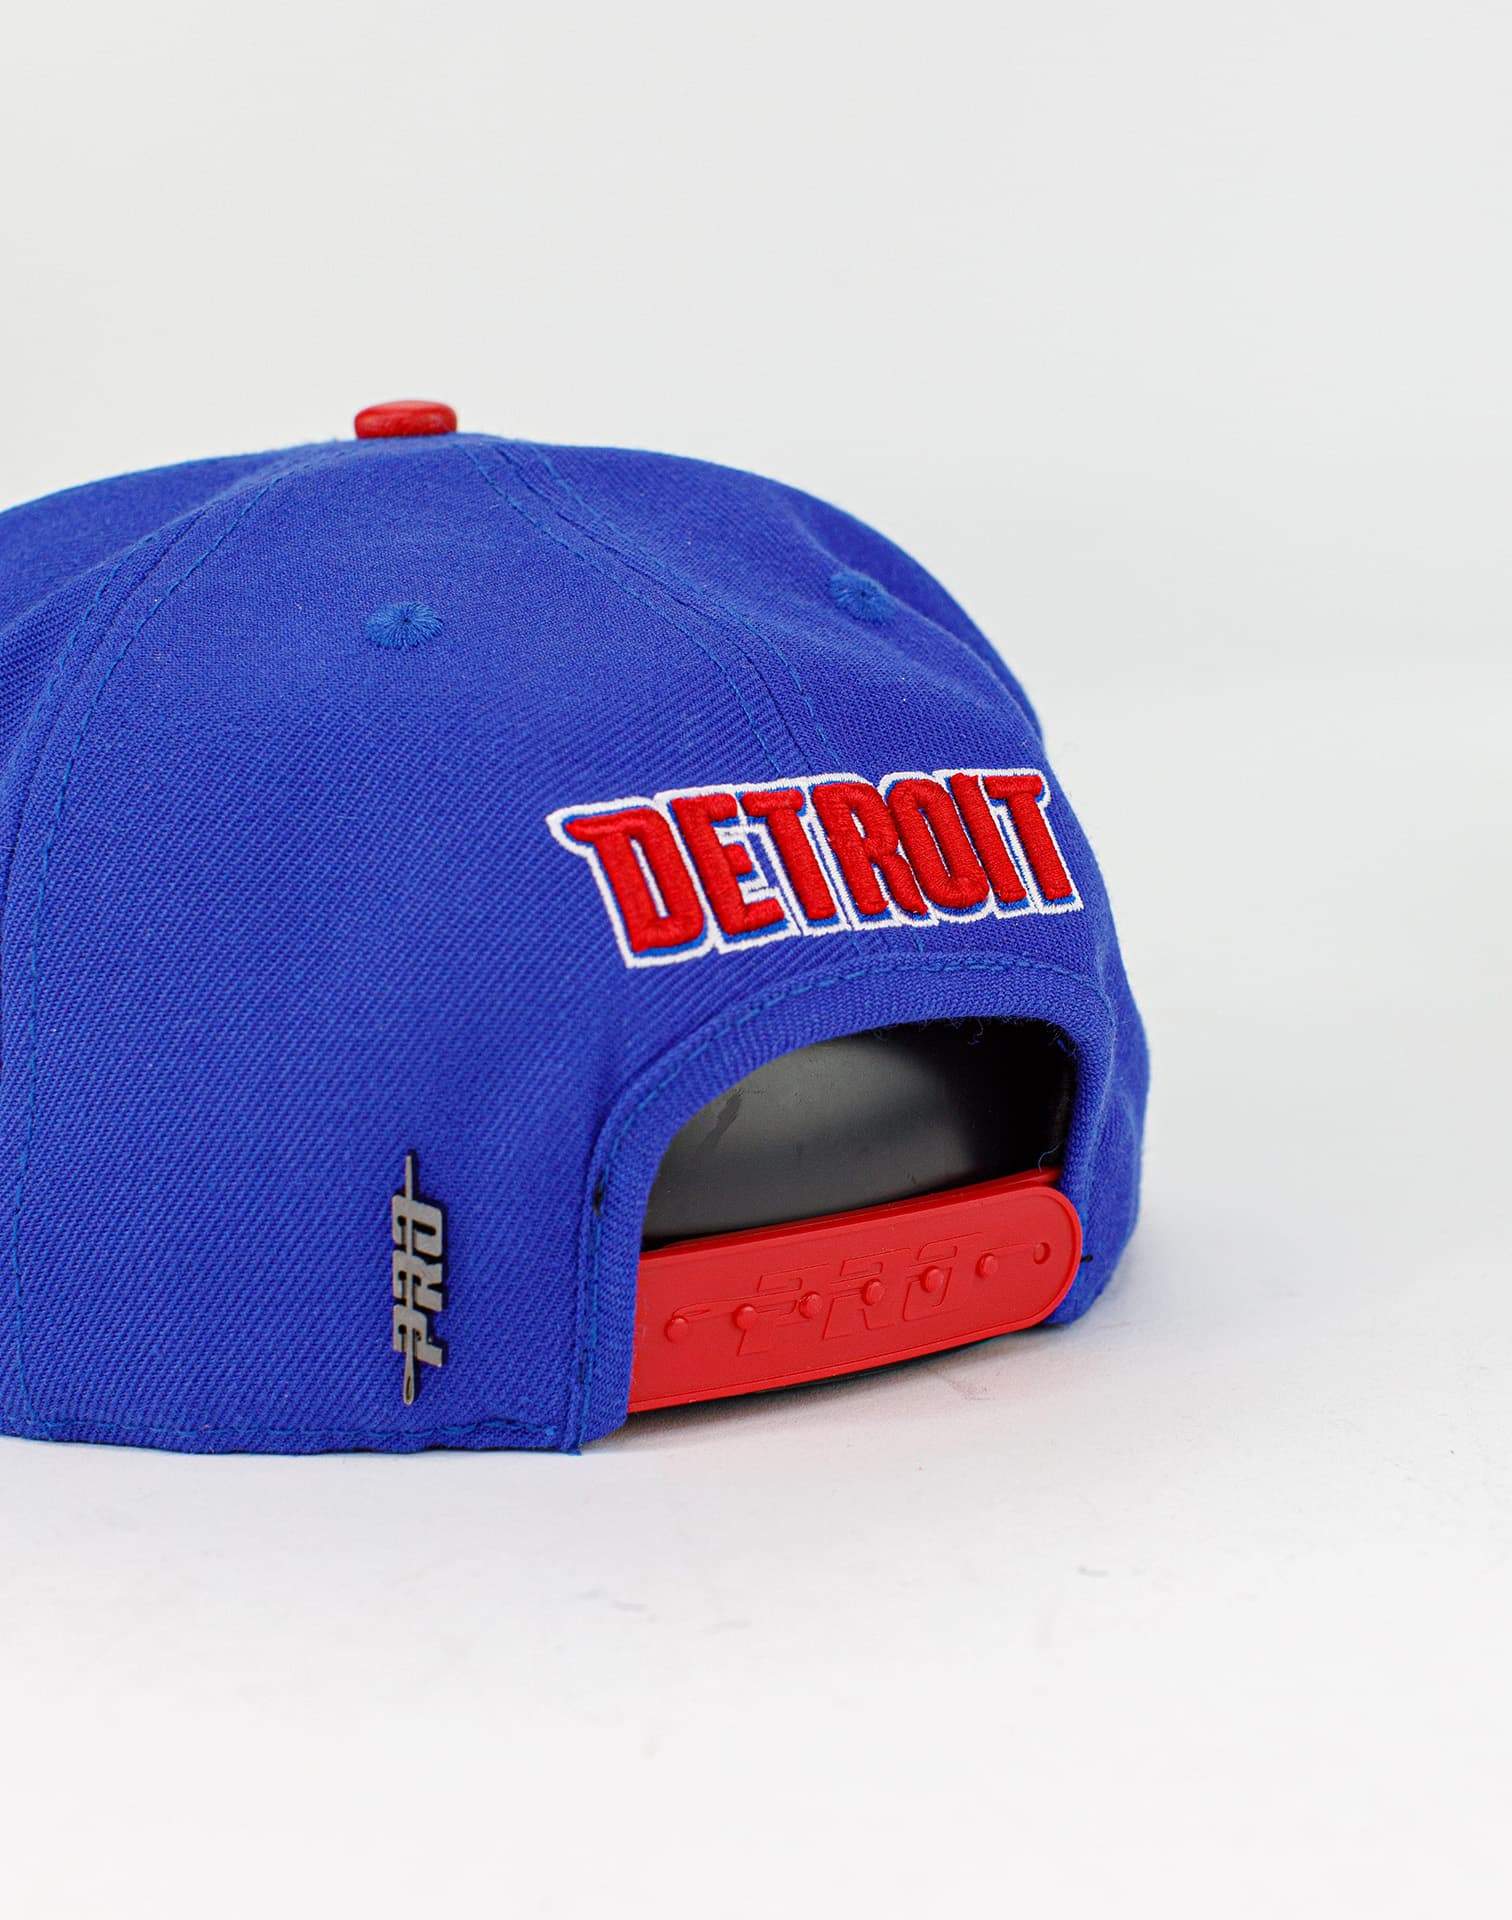 Pro Standard Detroit Pistons Cap (Royal Blue)